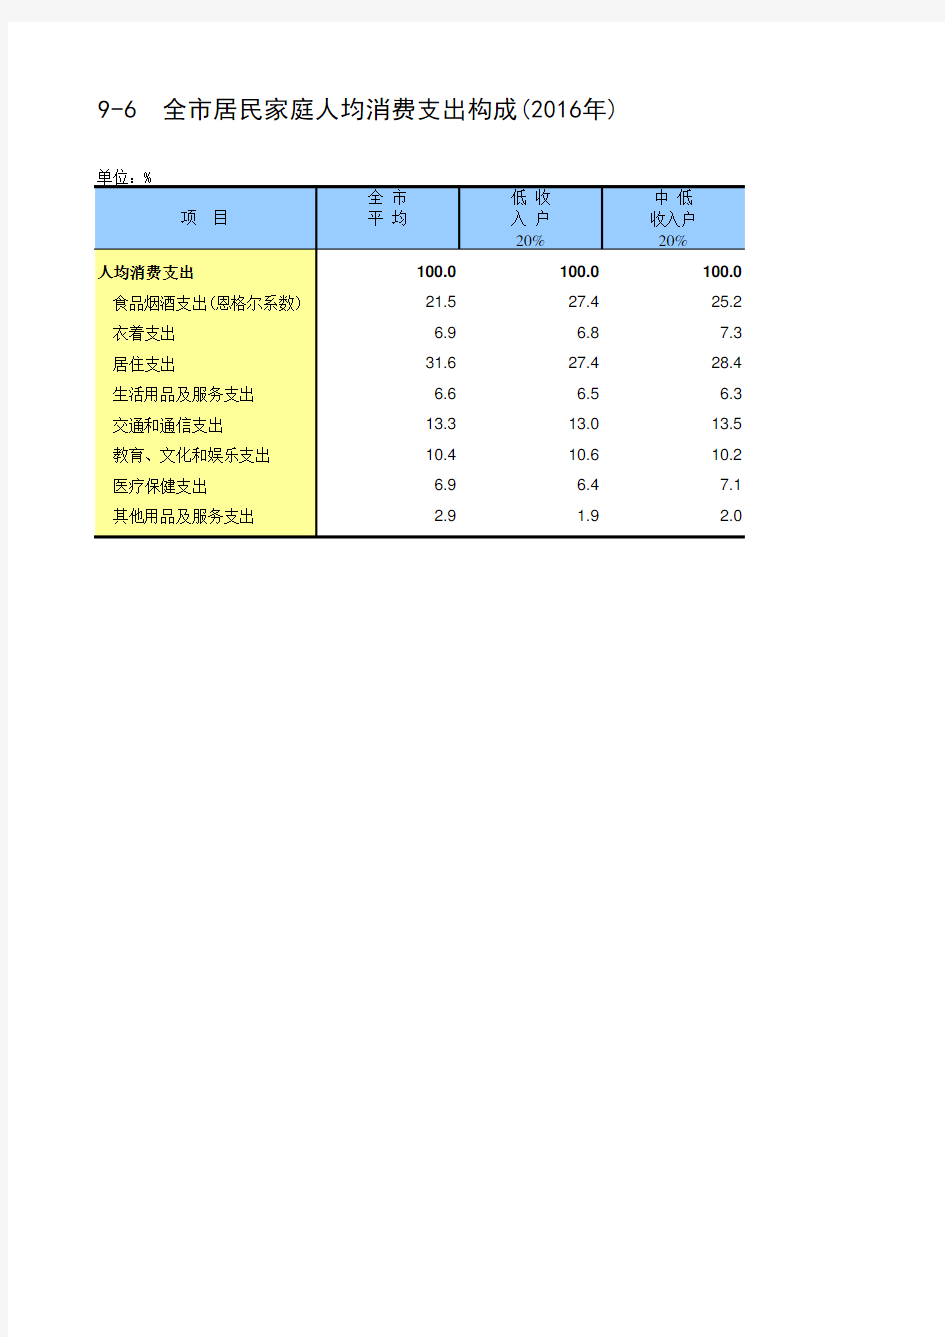 北京社会经济发展指标统计年鉴2017：9-6  全市居民家庭人均消费支出构成2016年